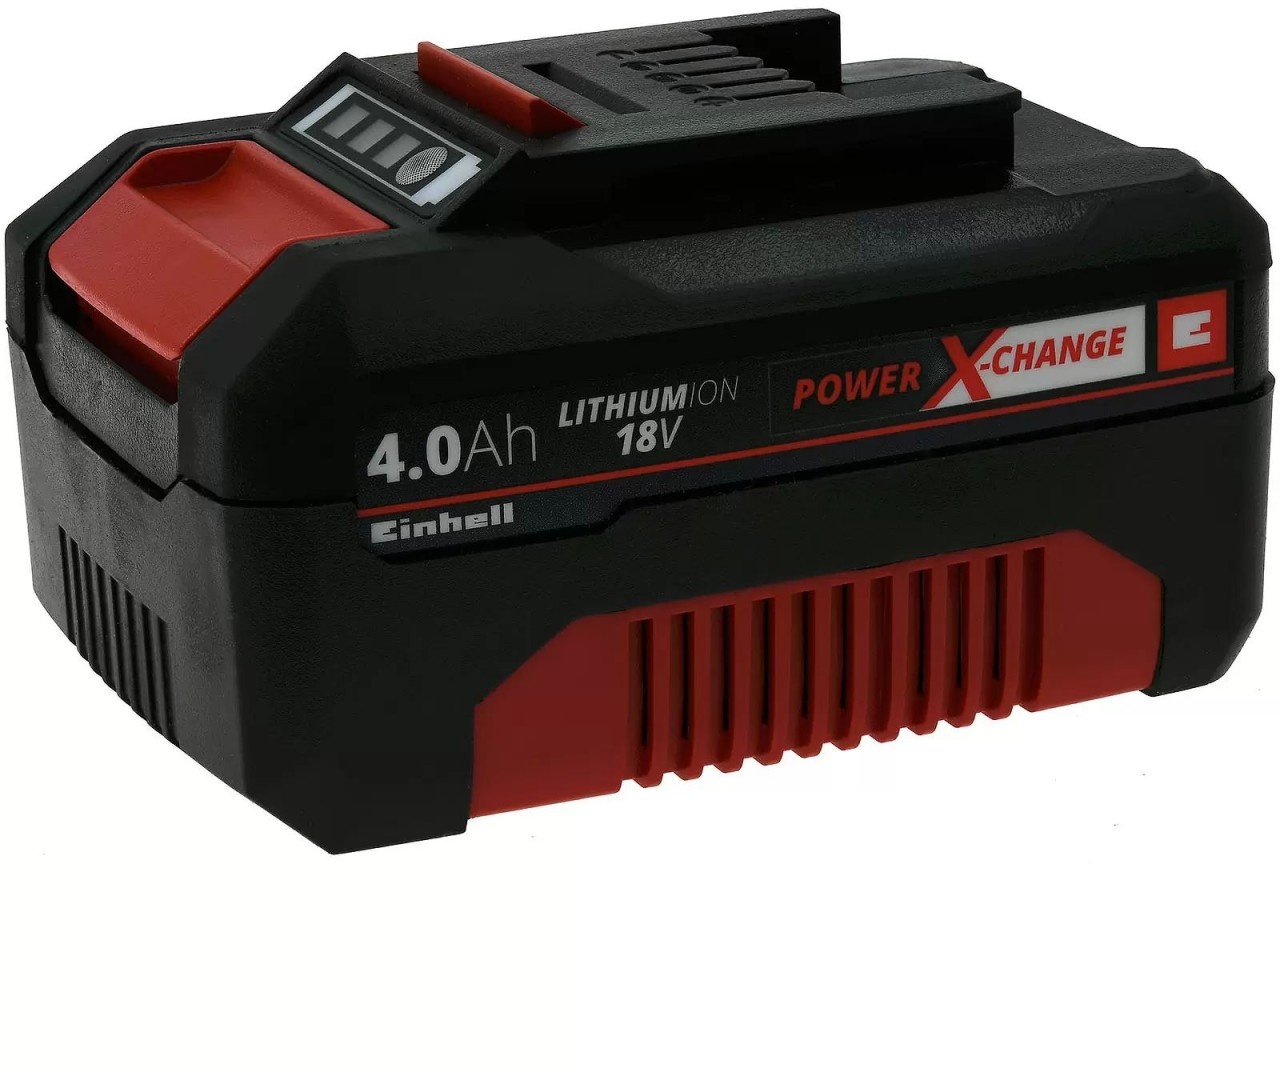 Akku Einhell Power X-Change Li-ion 18V 4,0Ah für alle Power X-Change Geräte Original